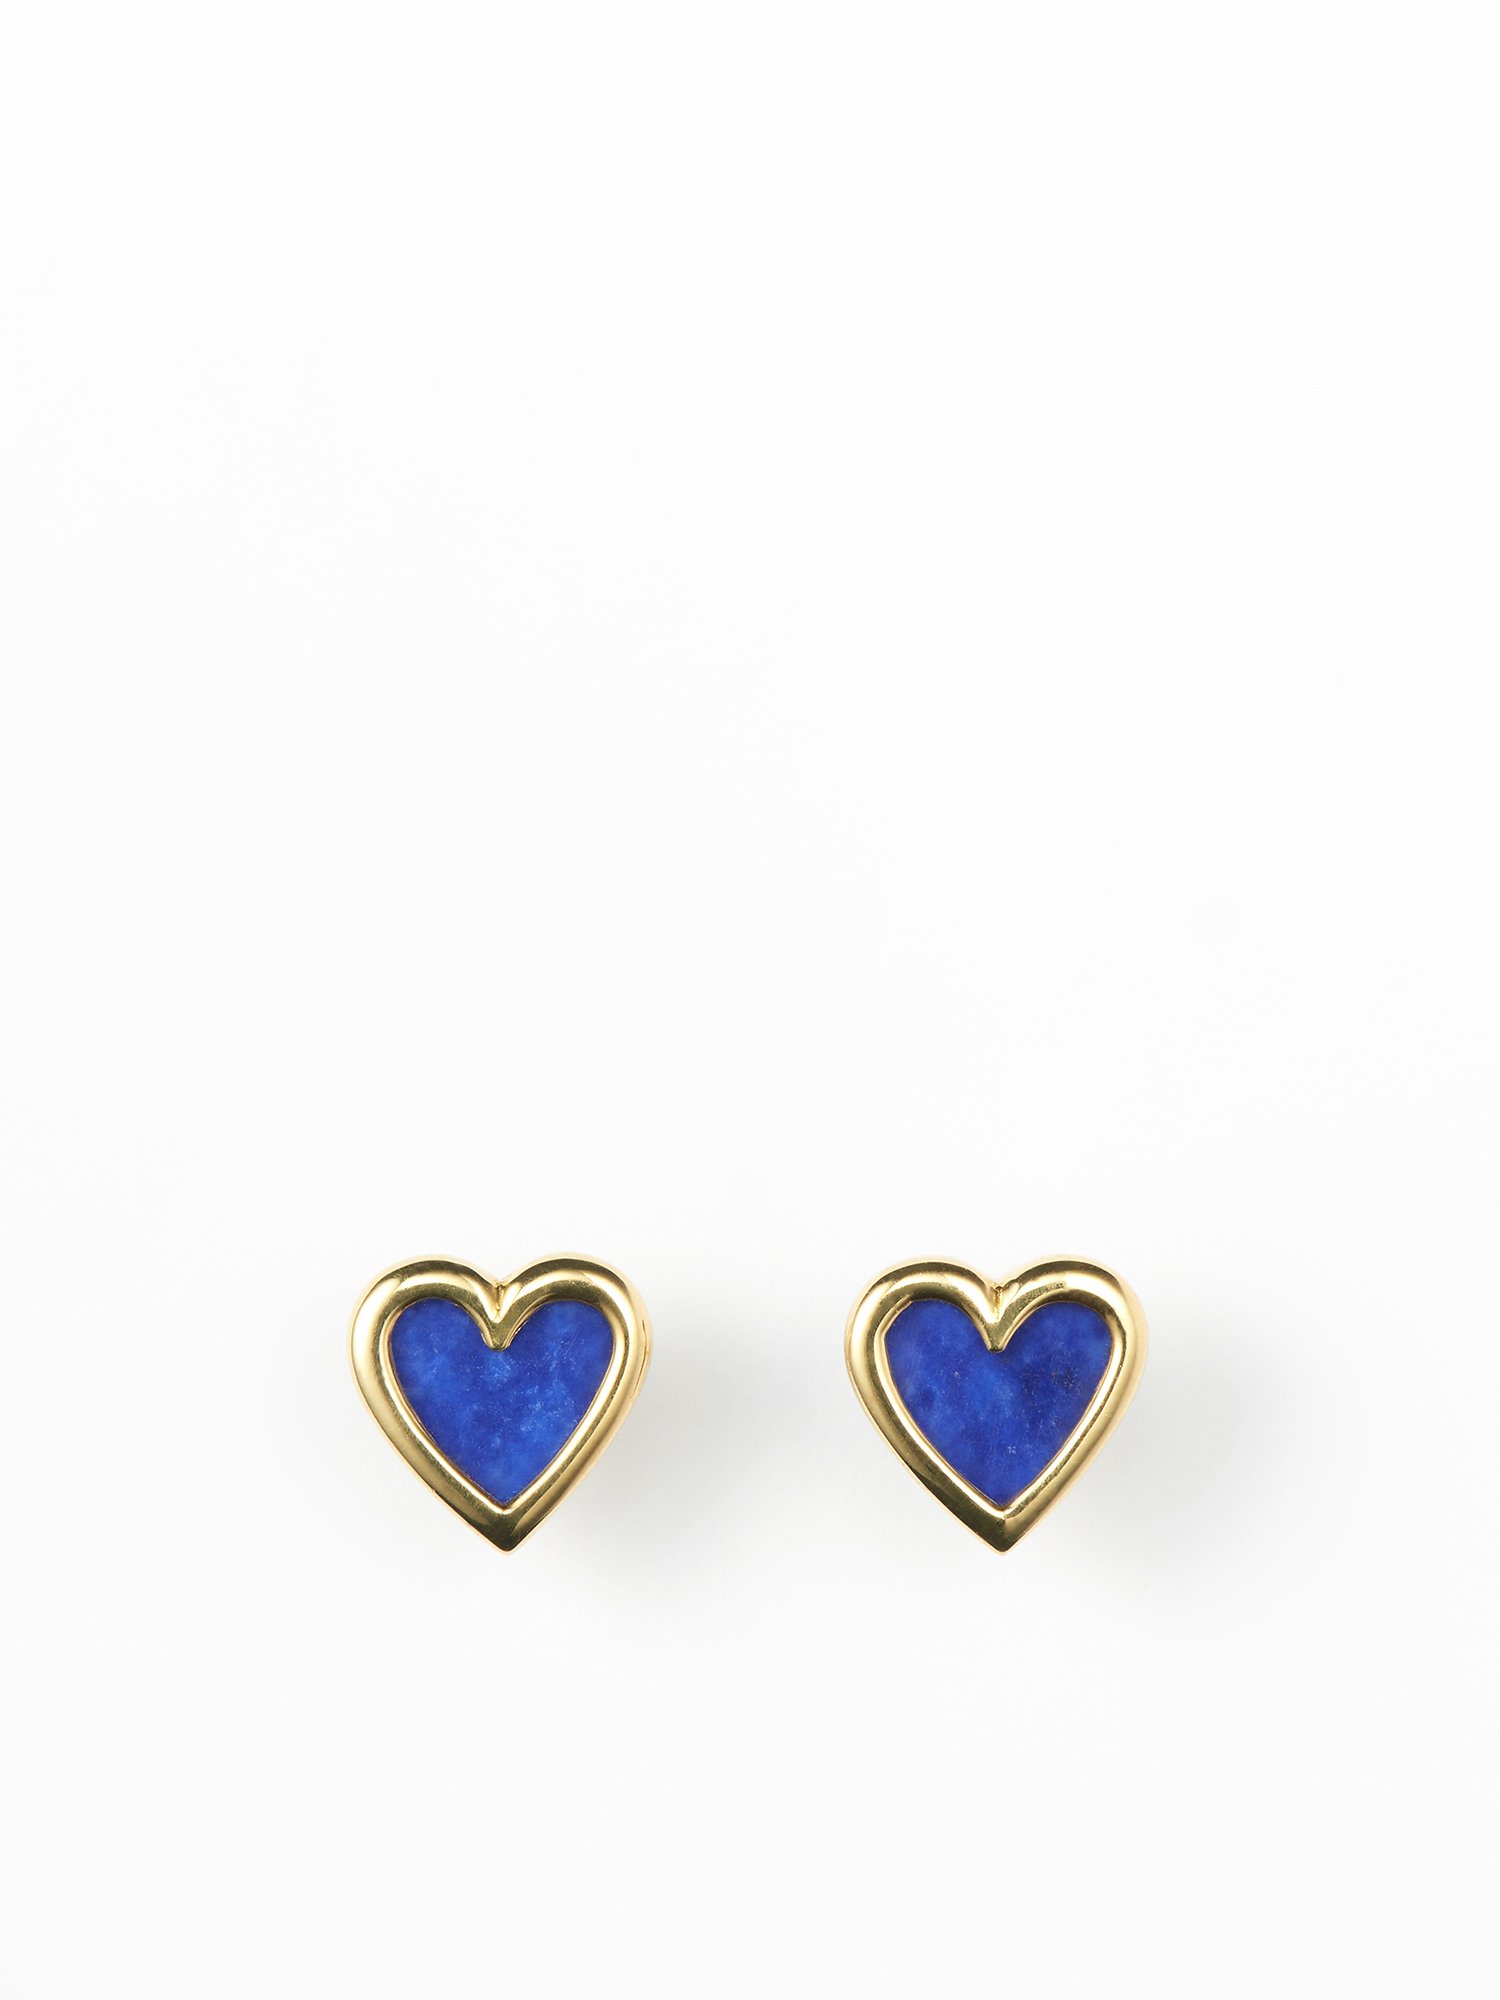 SOPHISTICATED VINTAGE / Vis stone earrings (heart) / Lapis - GIGI